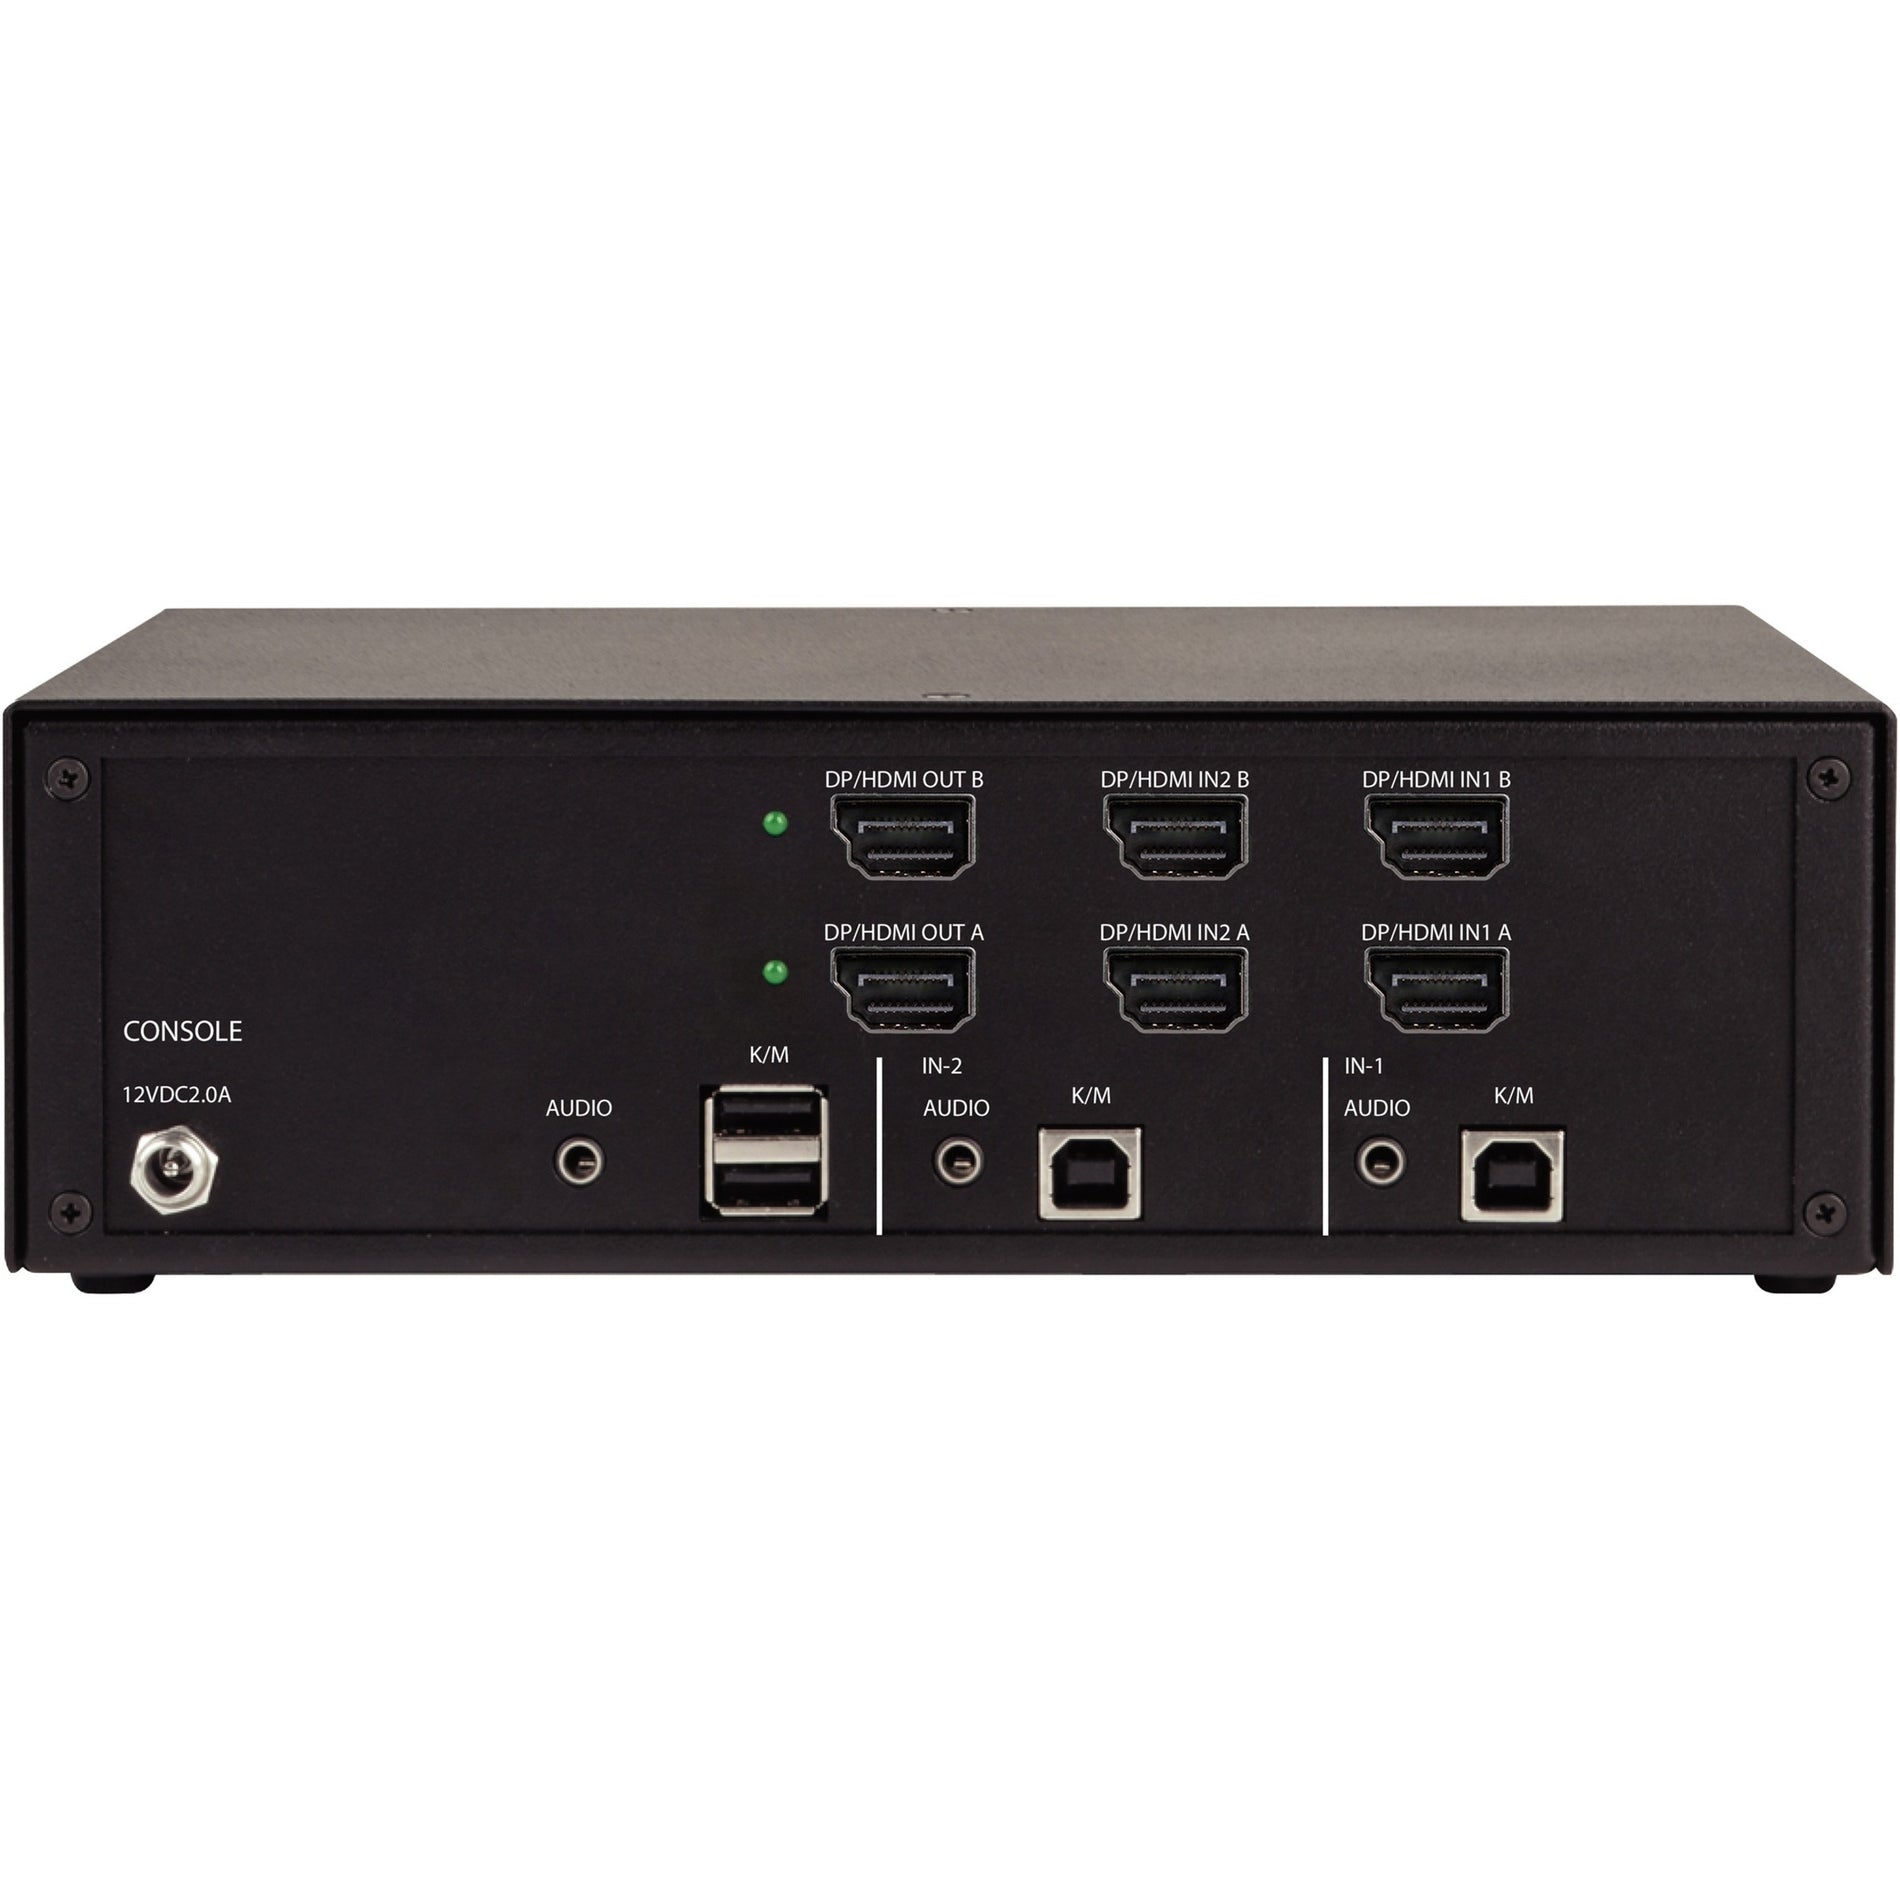 صندوق أسود KVS4-2002HV مفتاح KVM آمن - FlexPort HDMI / DisplayPort ، 4 منافذ USB ، دقة 3840 × 2160 ، ضمان لمدة عام العلامة التجارية: صندوق أسود ترجمة اسم العلامة التجارية: الصندوق الأسود